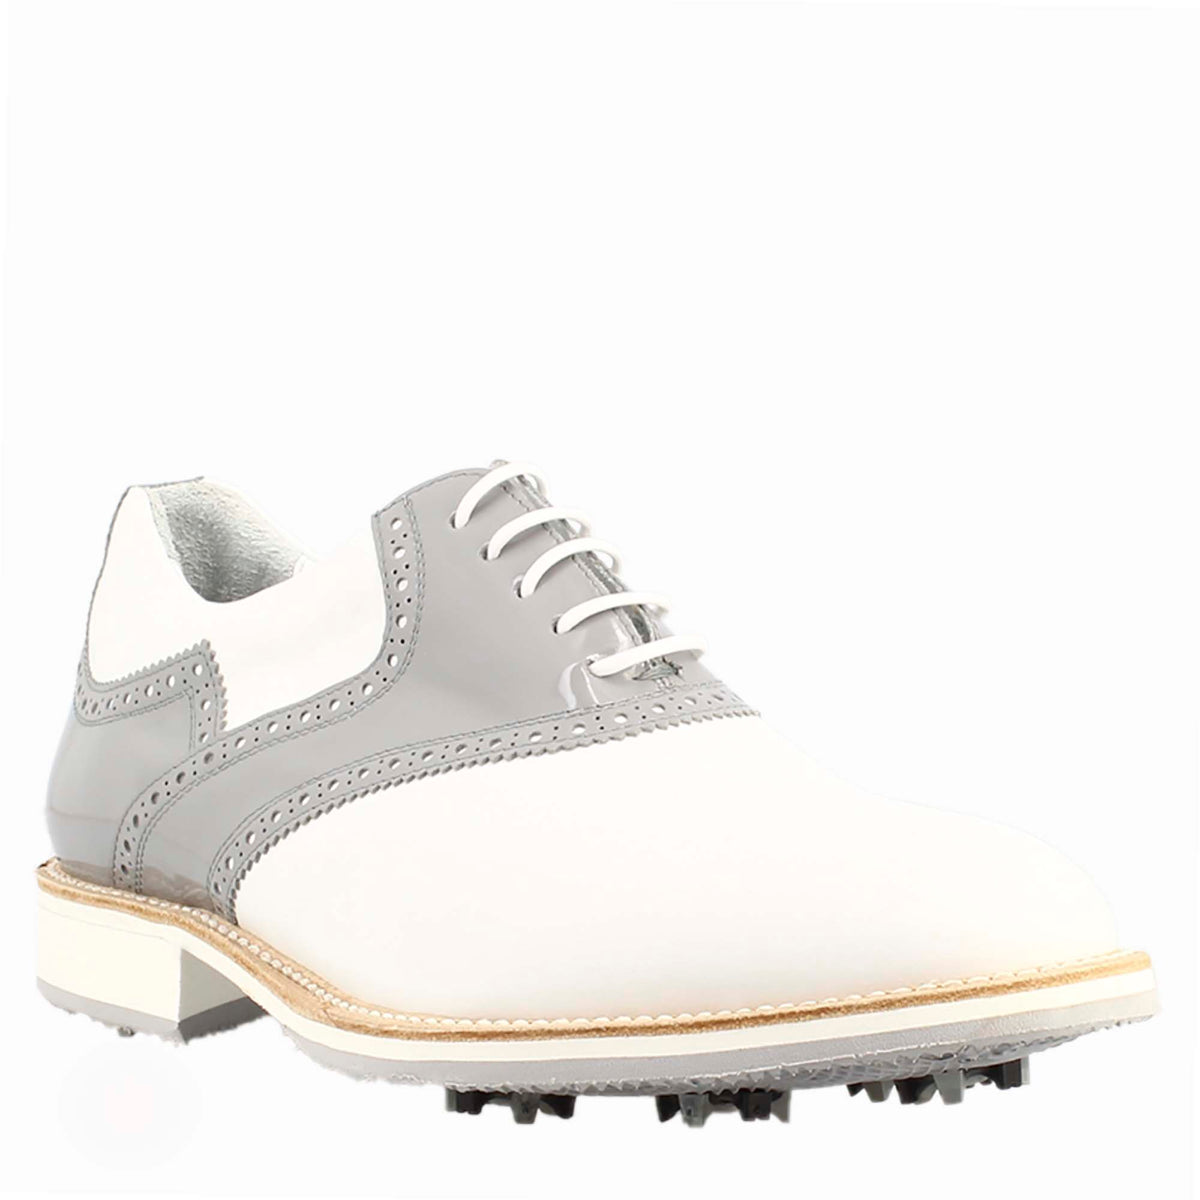 Chaussures de golf pour femme en cuir blanc et gris, avec des détails de brogue faits à la main